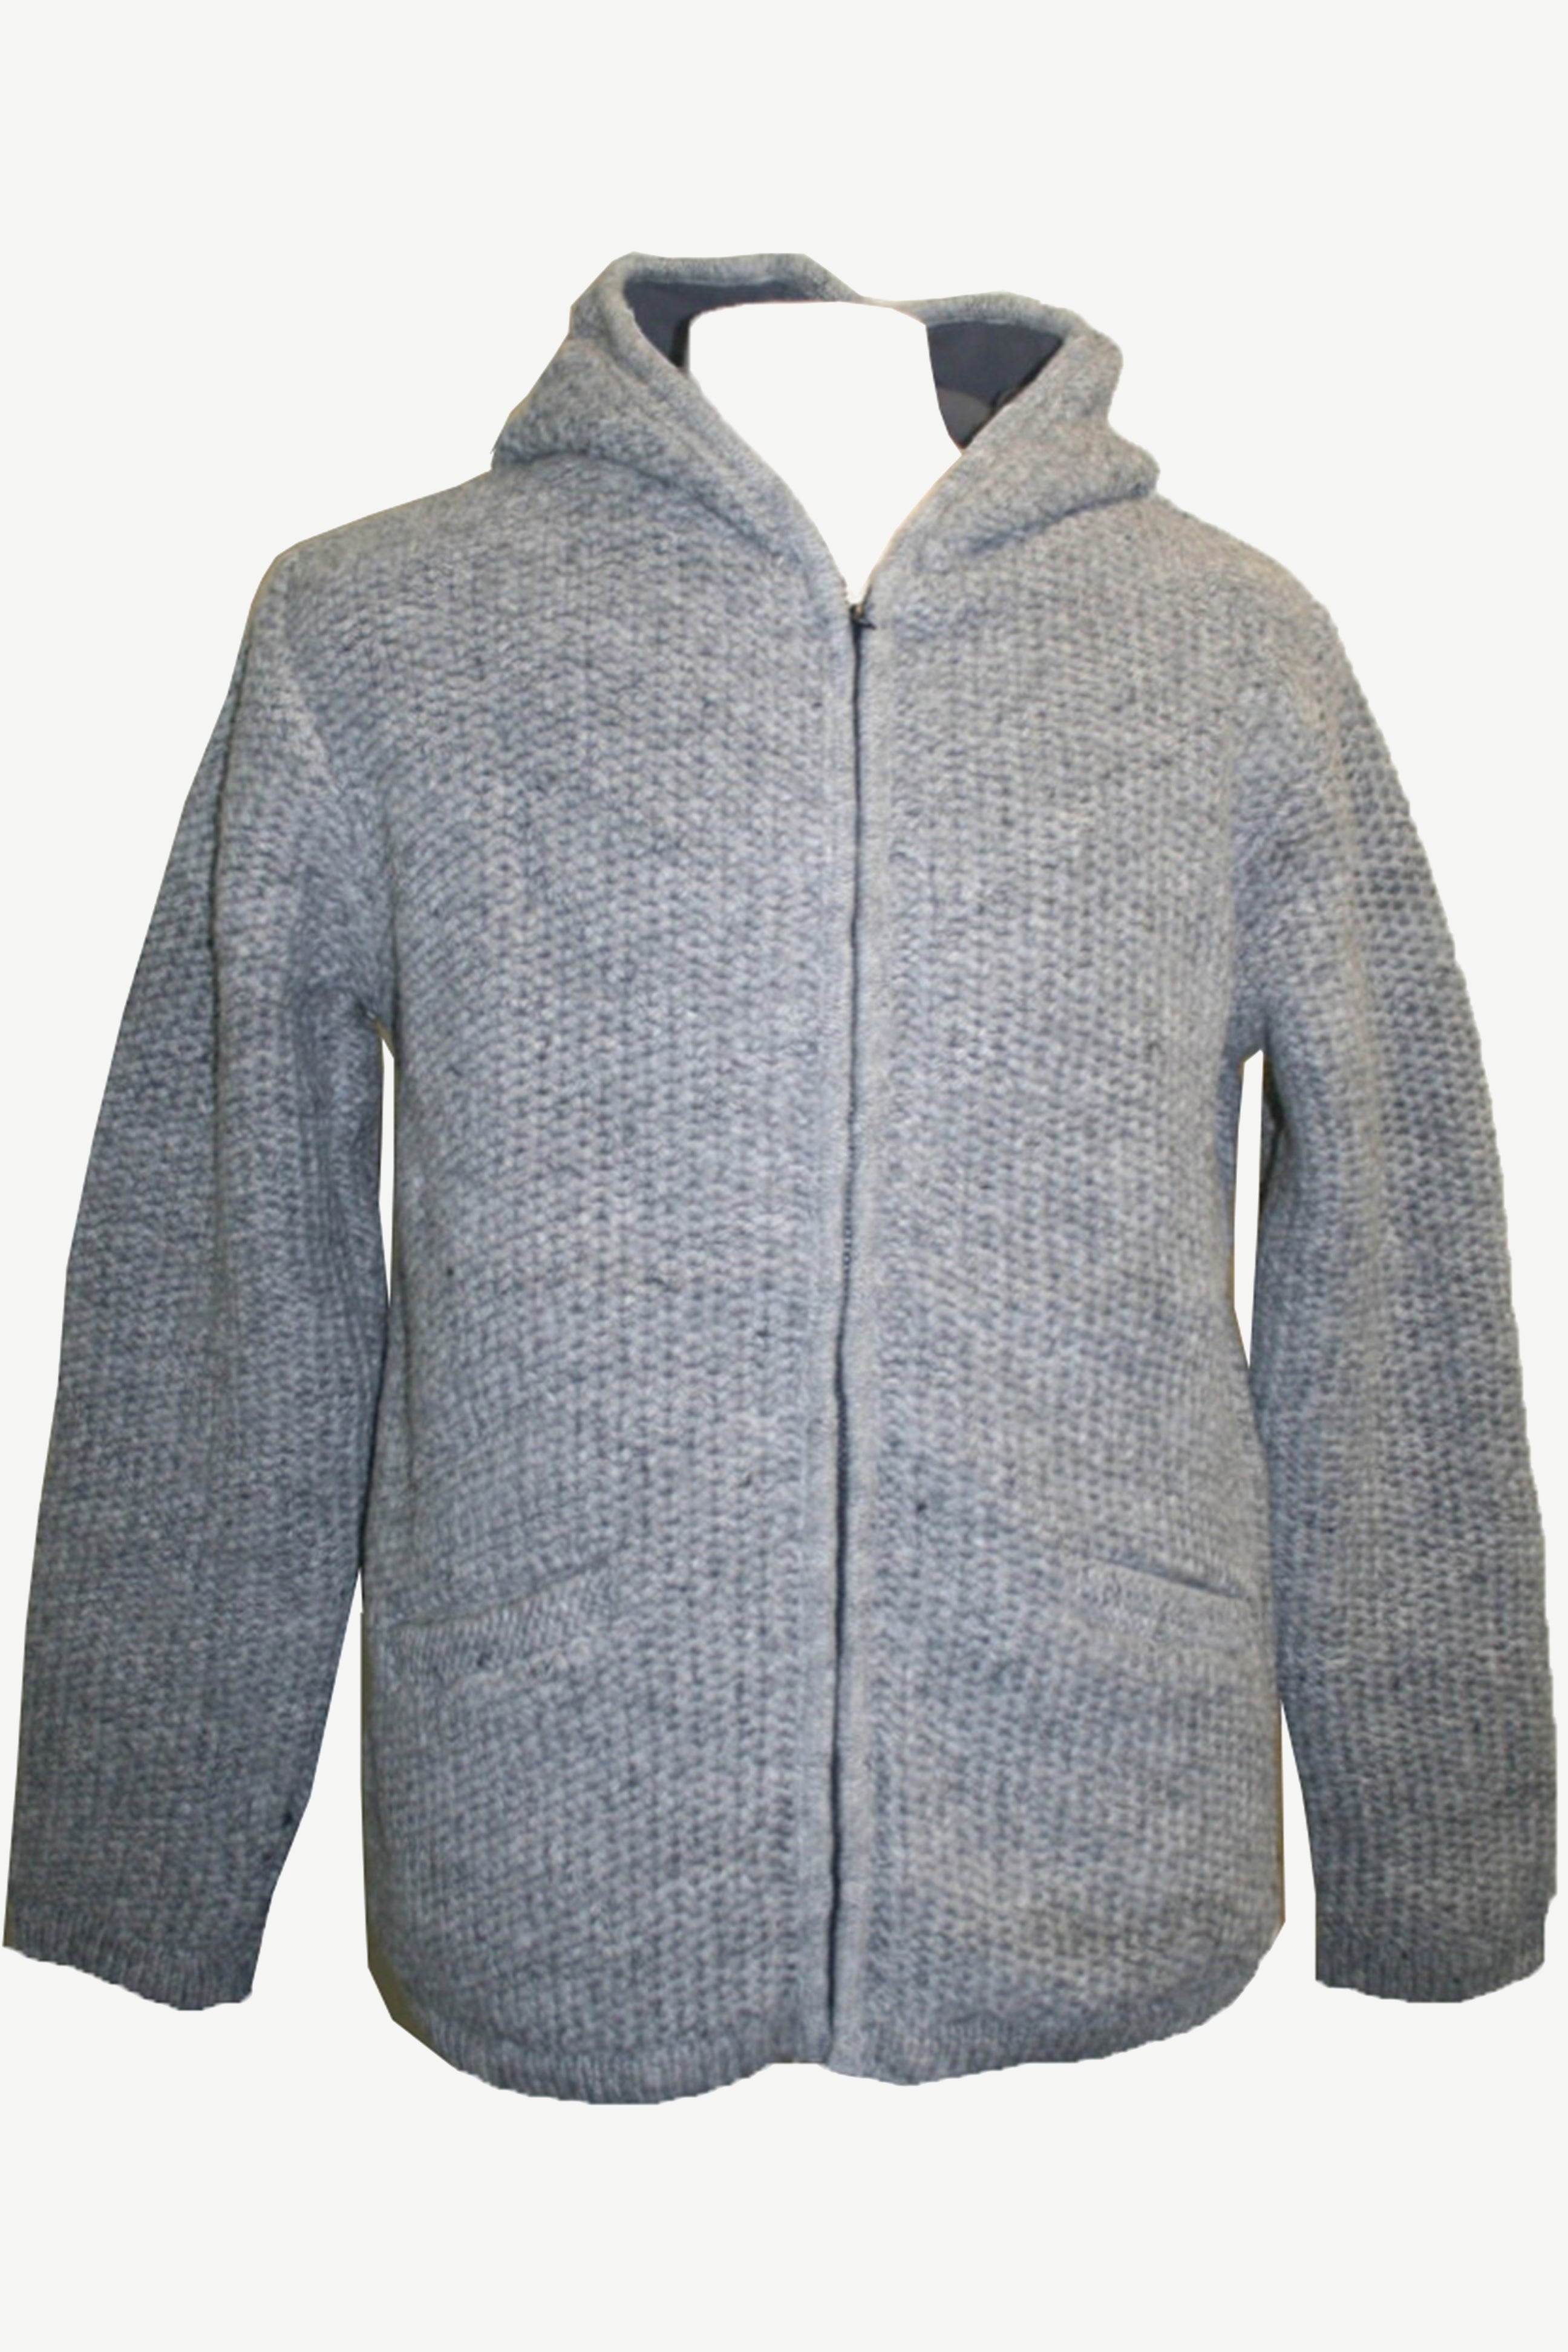 Agan Traders UF 5 Himalayan Wool Warm Fleece Hoodie Sweater Coat Jacket ...